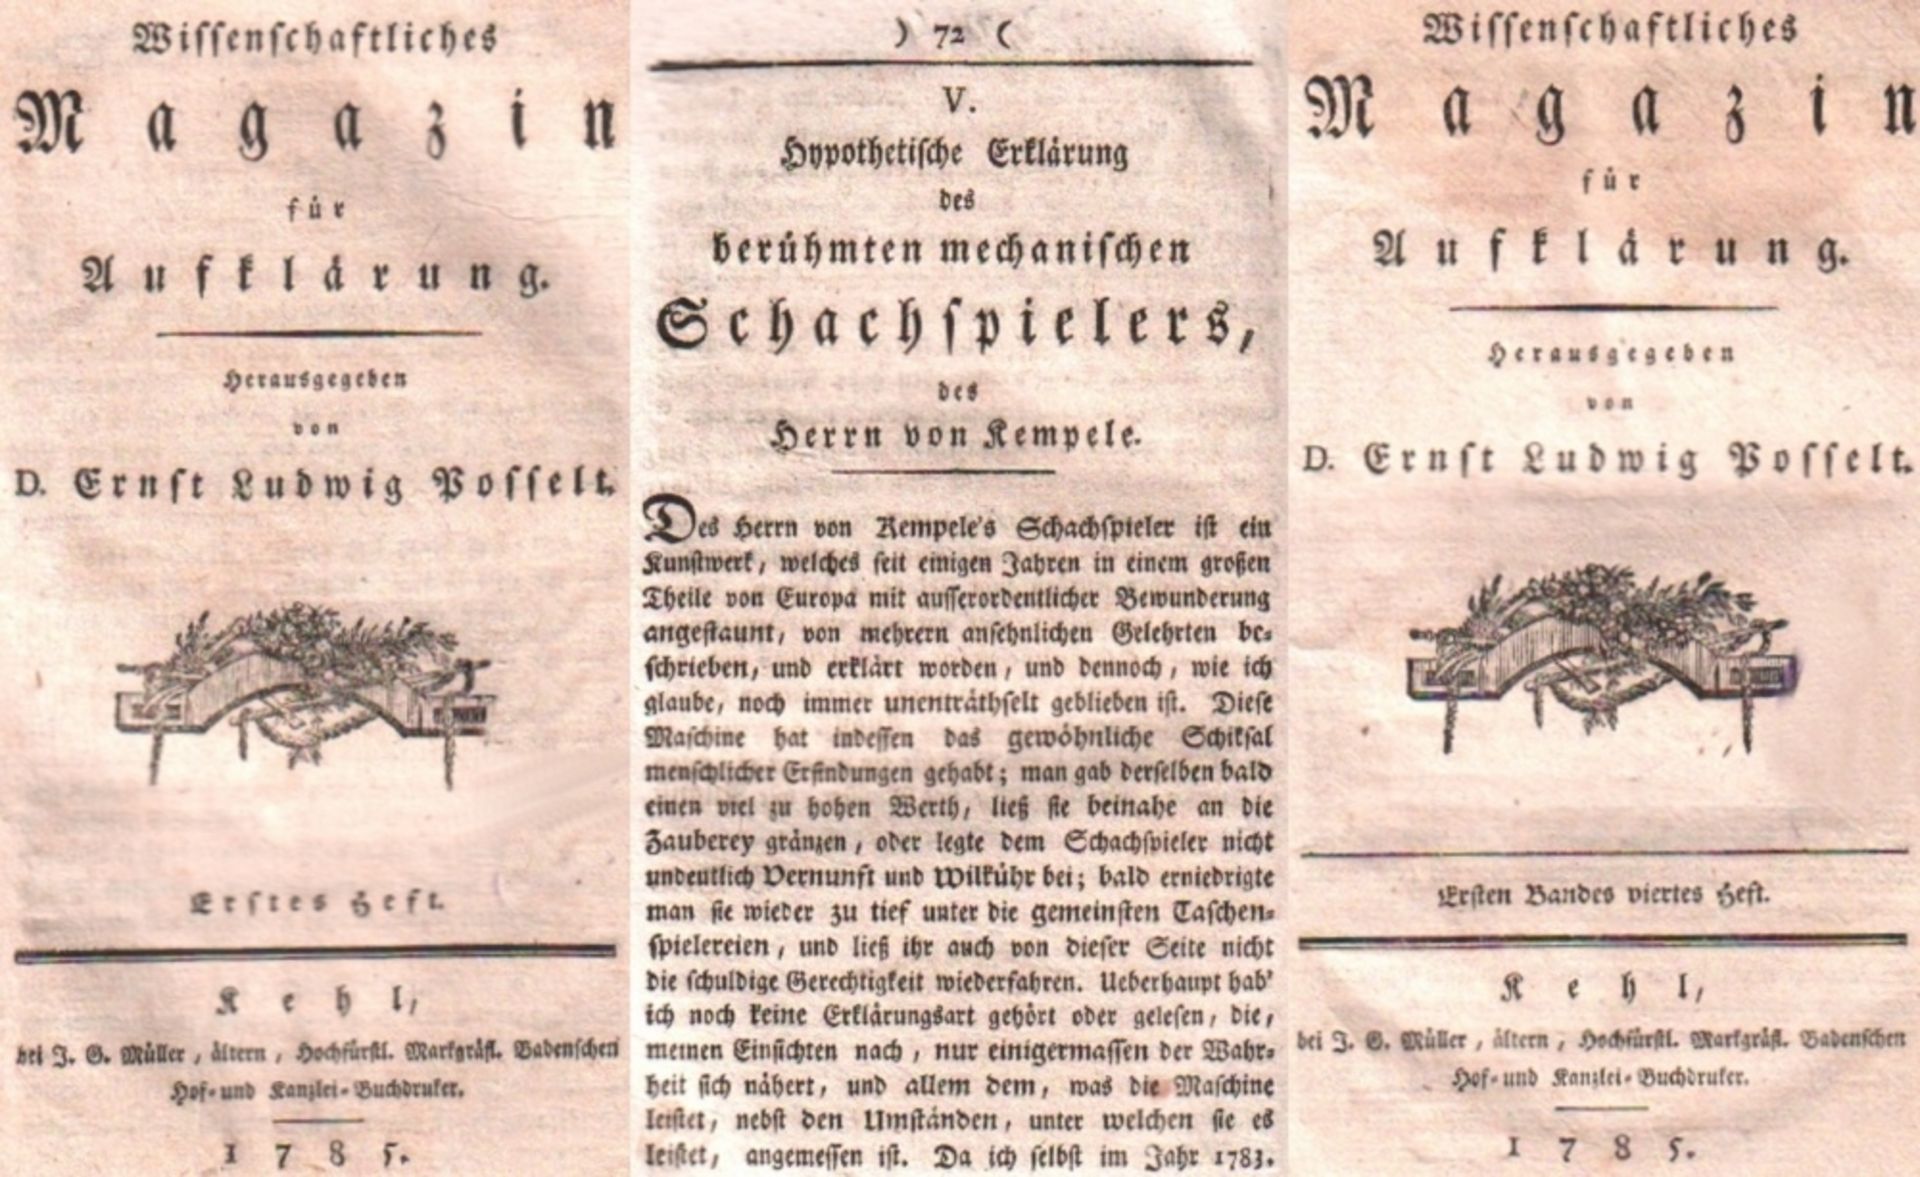 Kempelen. Böckmann, Johann Lorenz. Hypothetische Erklärung des berühmten mechanischen